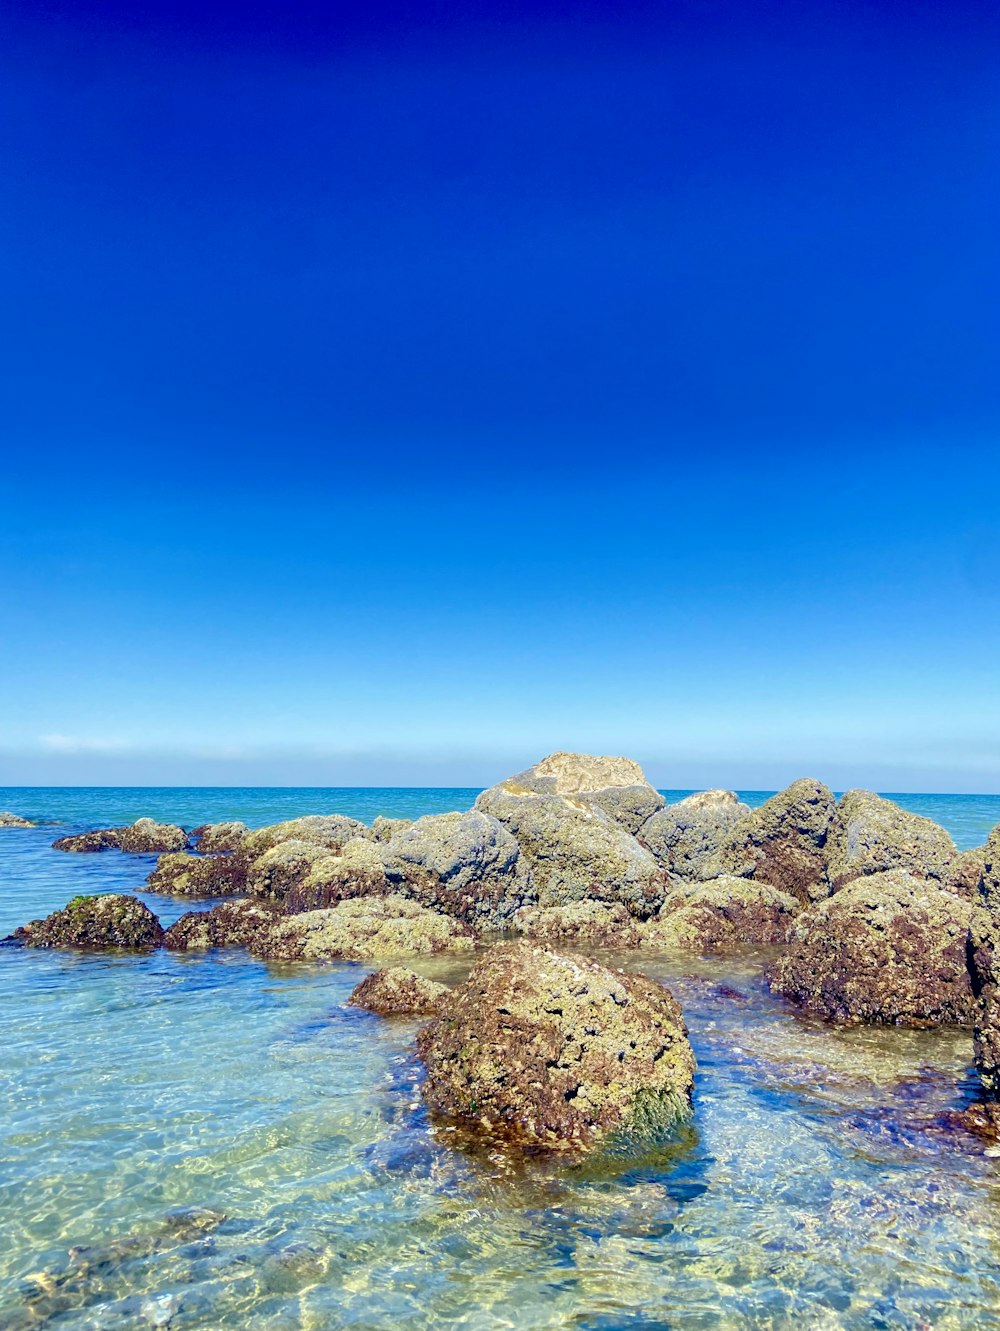 uma praia rochosa com água azul clara sob um céu azul